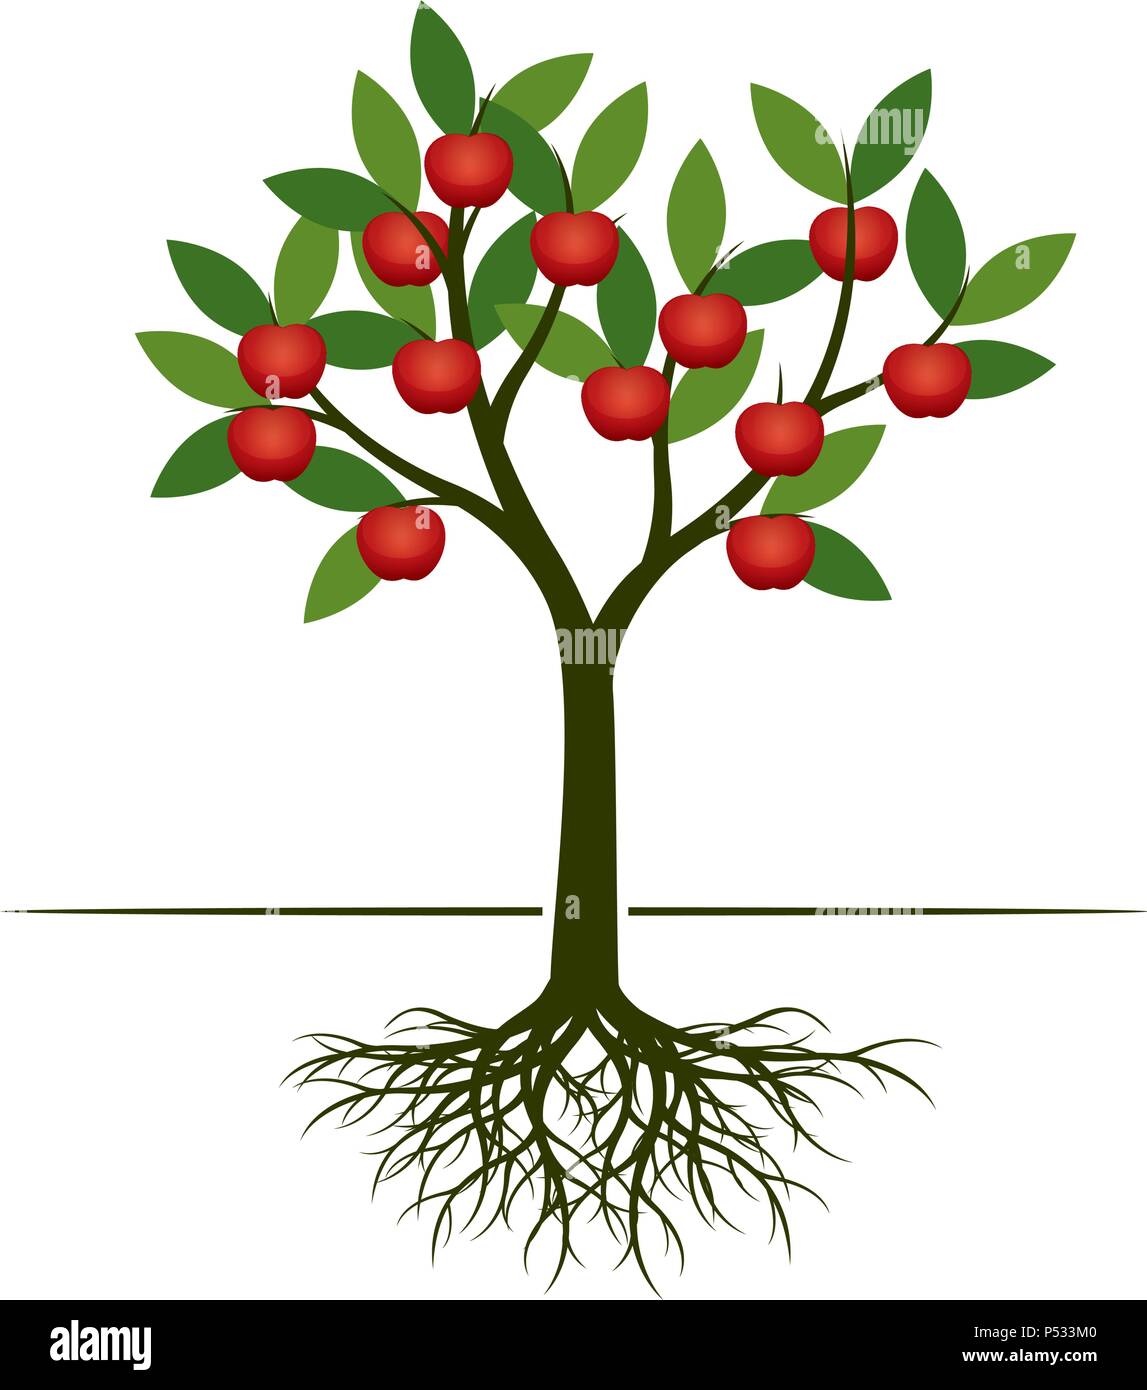 Green Apple Tree con manzana roja de frutas. Ilustración vectorial. Ilustración del Vector